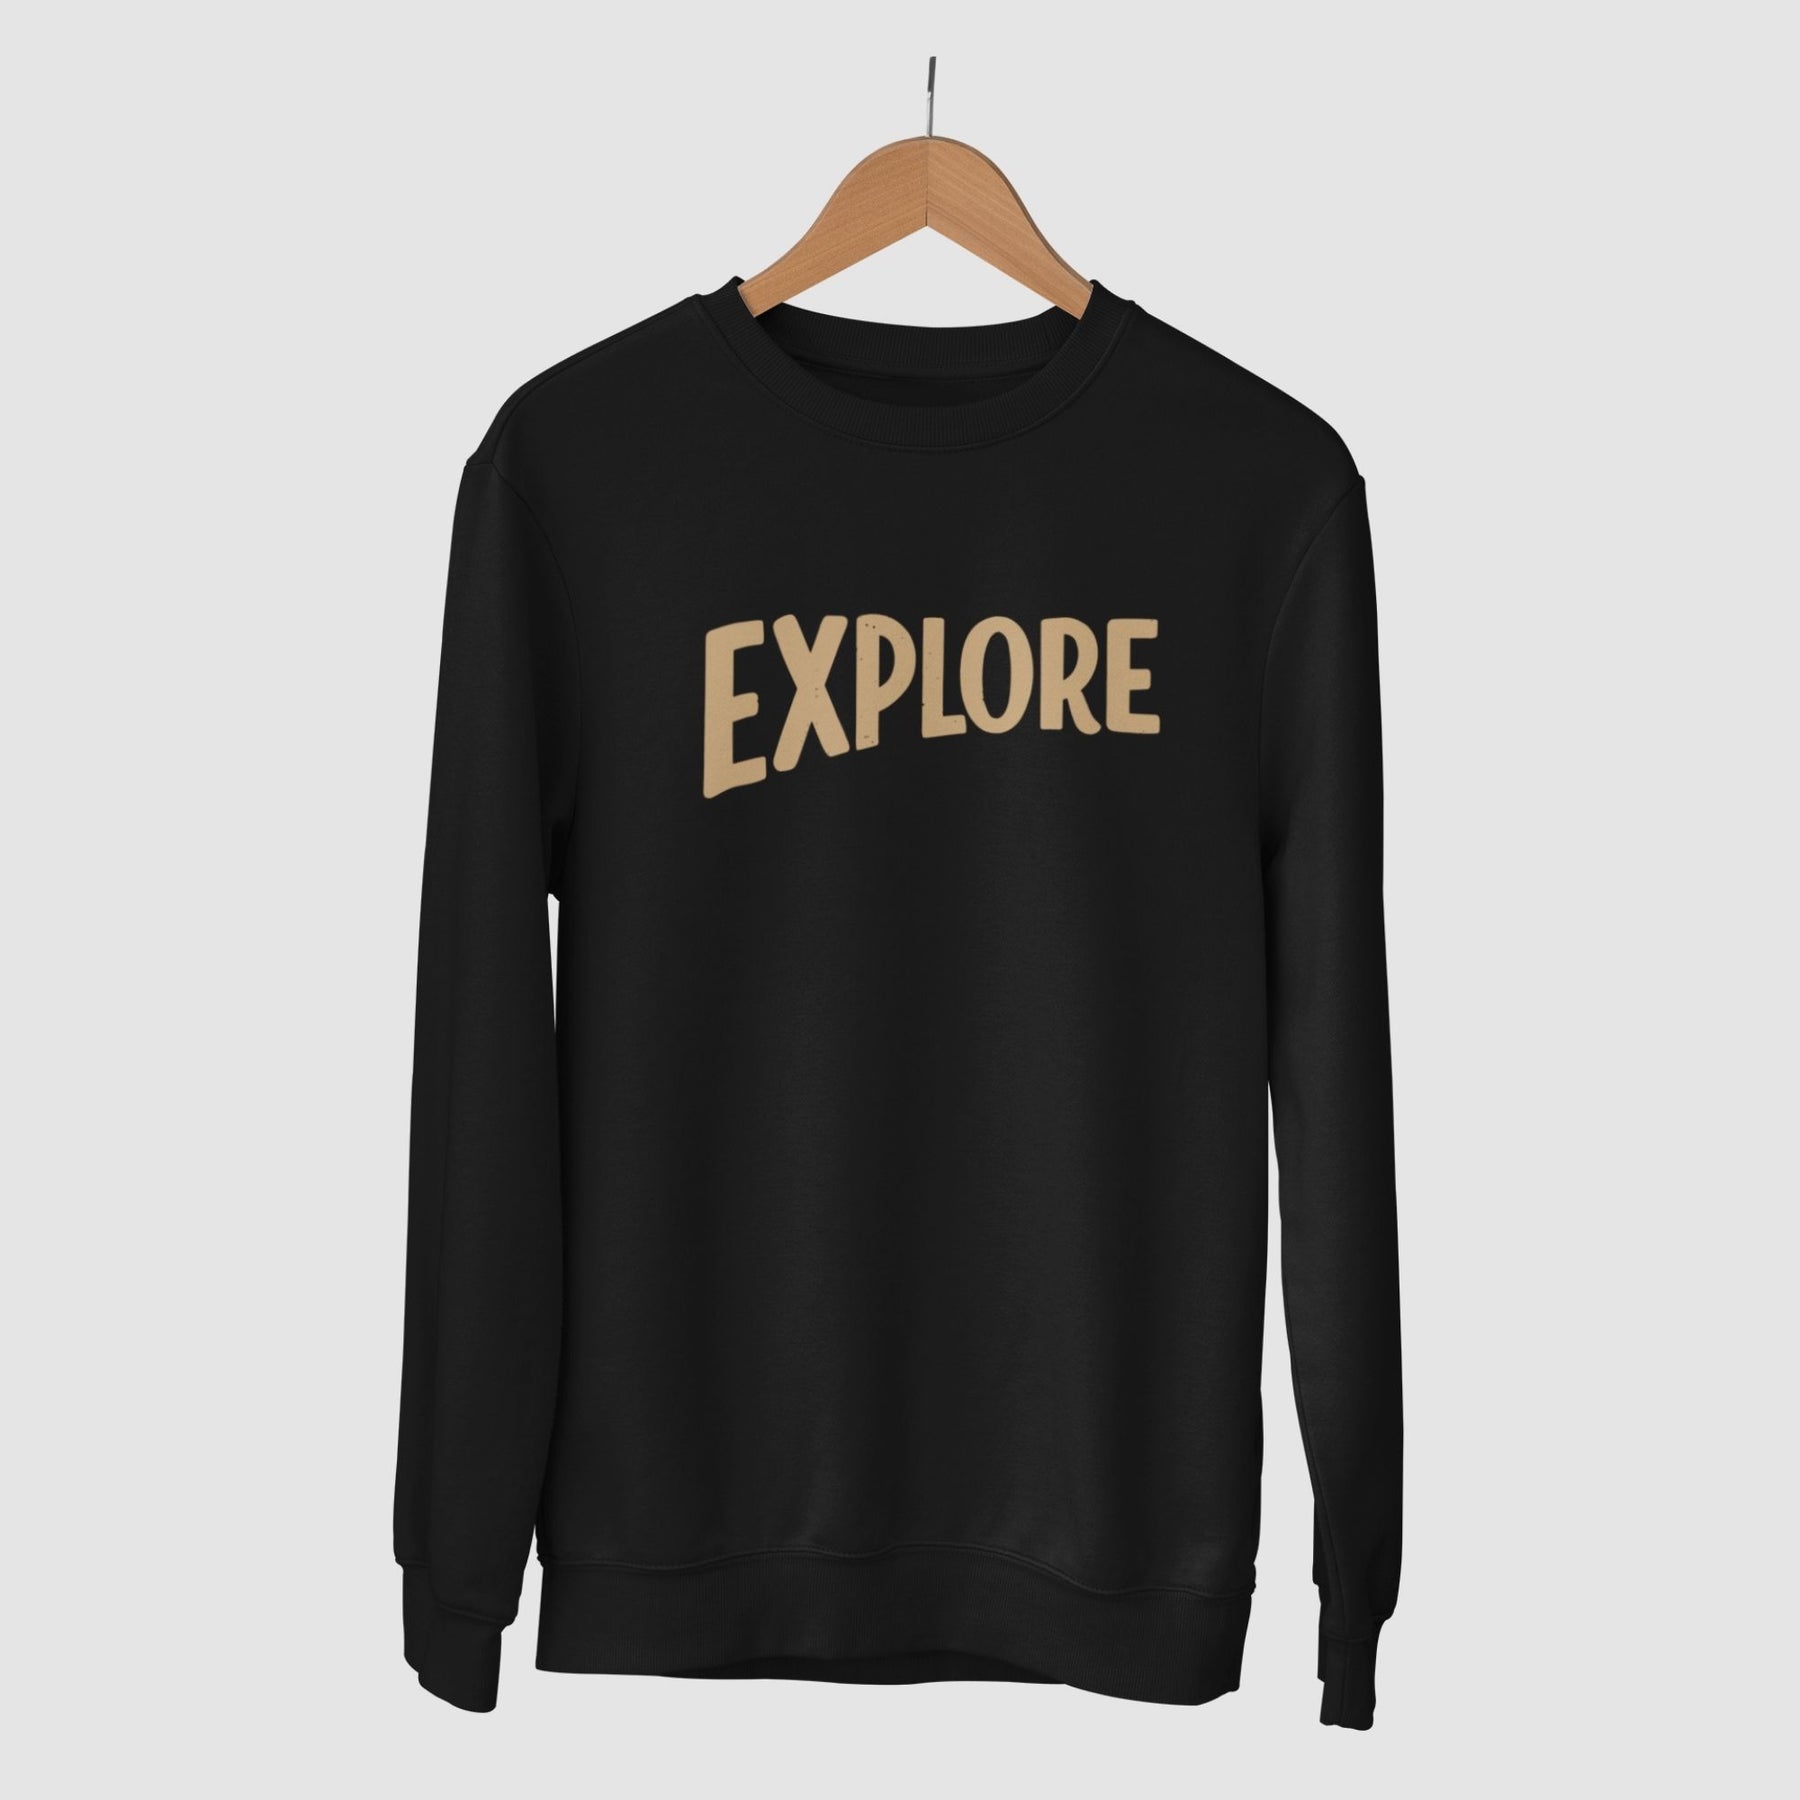 explore-cotton-printed-unisex-black-sweatshirt-gogirgit-com